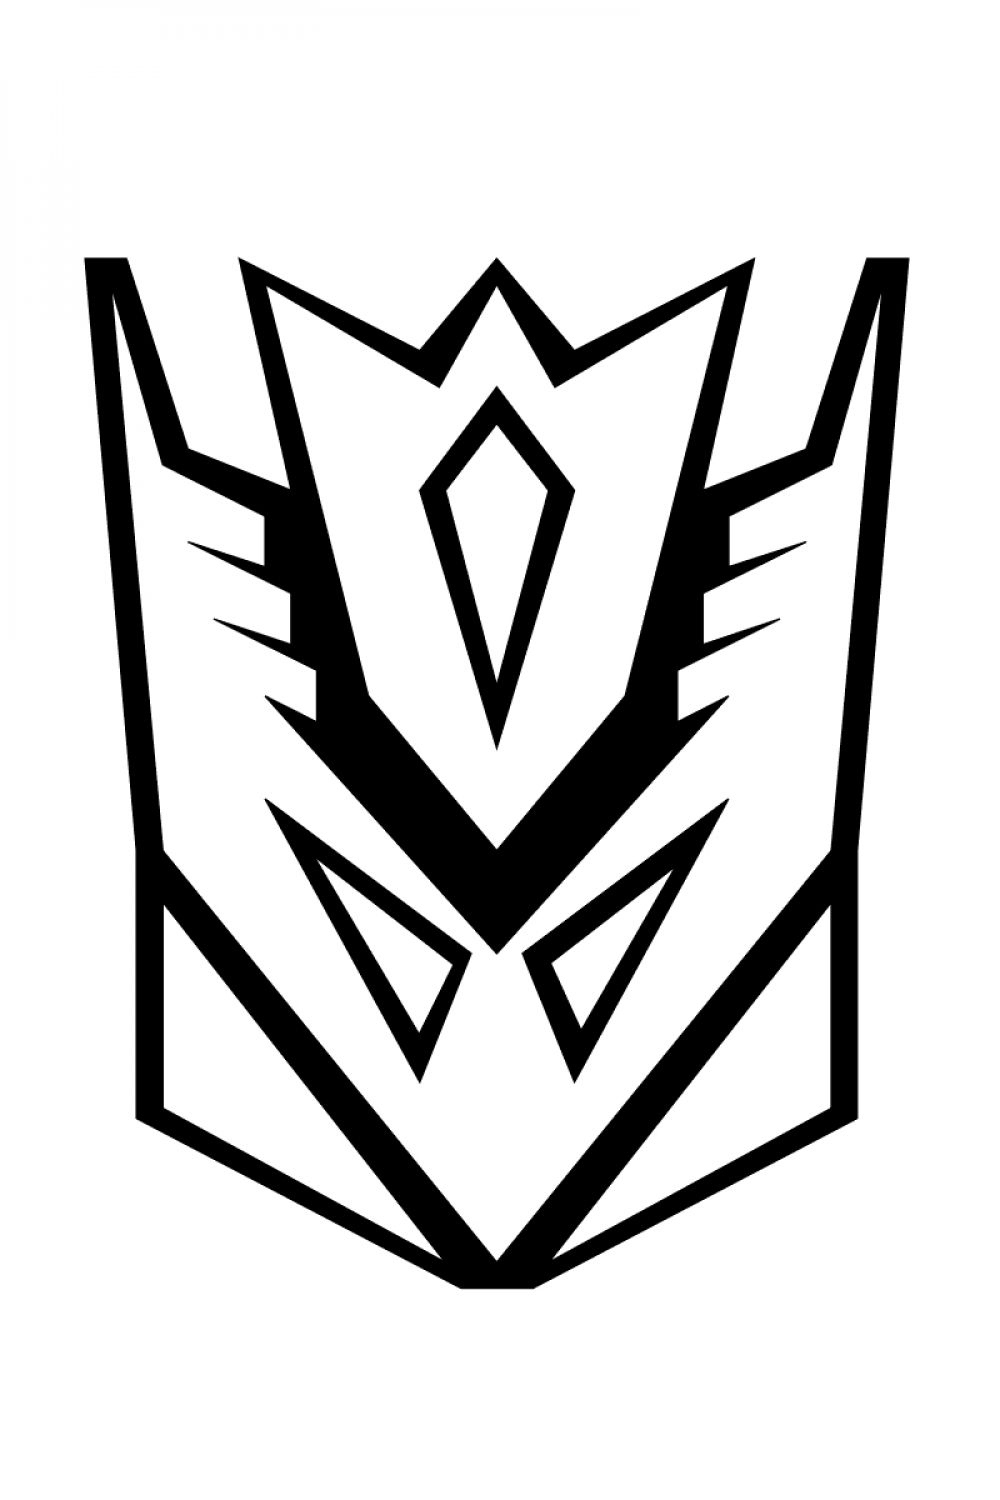 Desenhos Para Colorir Transformers – Imprimir Grátis